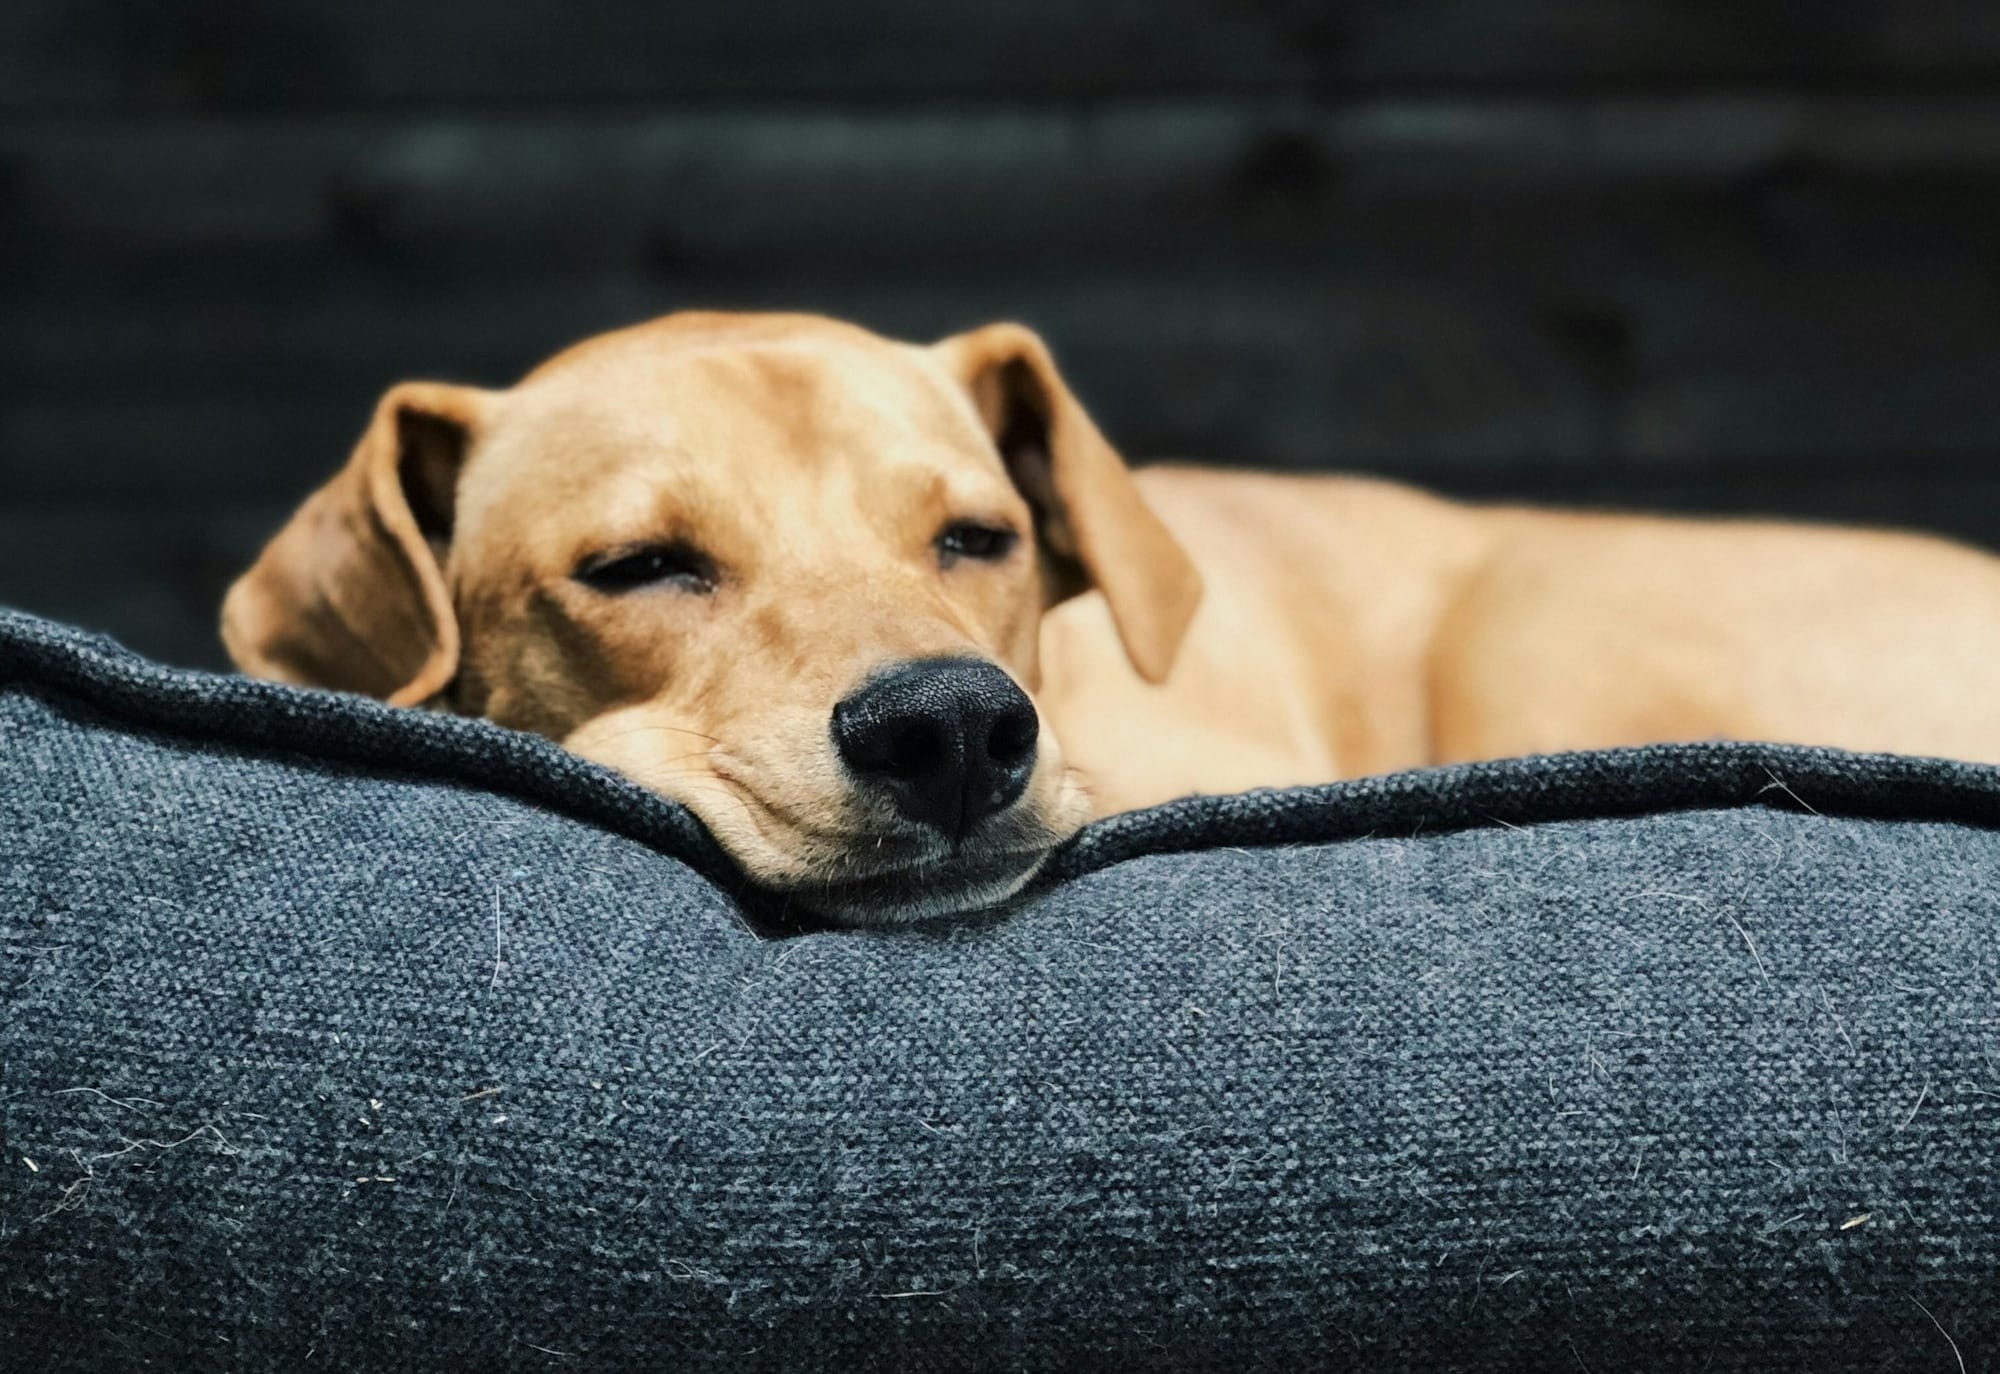 Why Do Dogs Run in Their Sleep